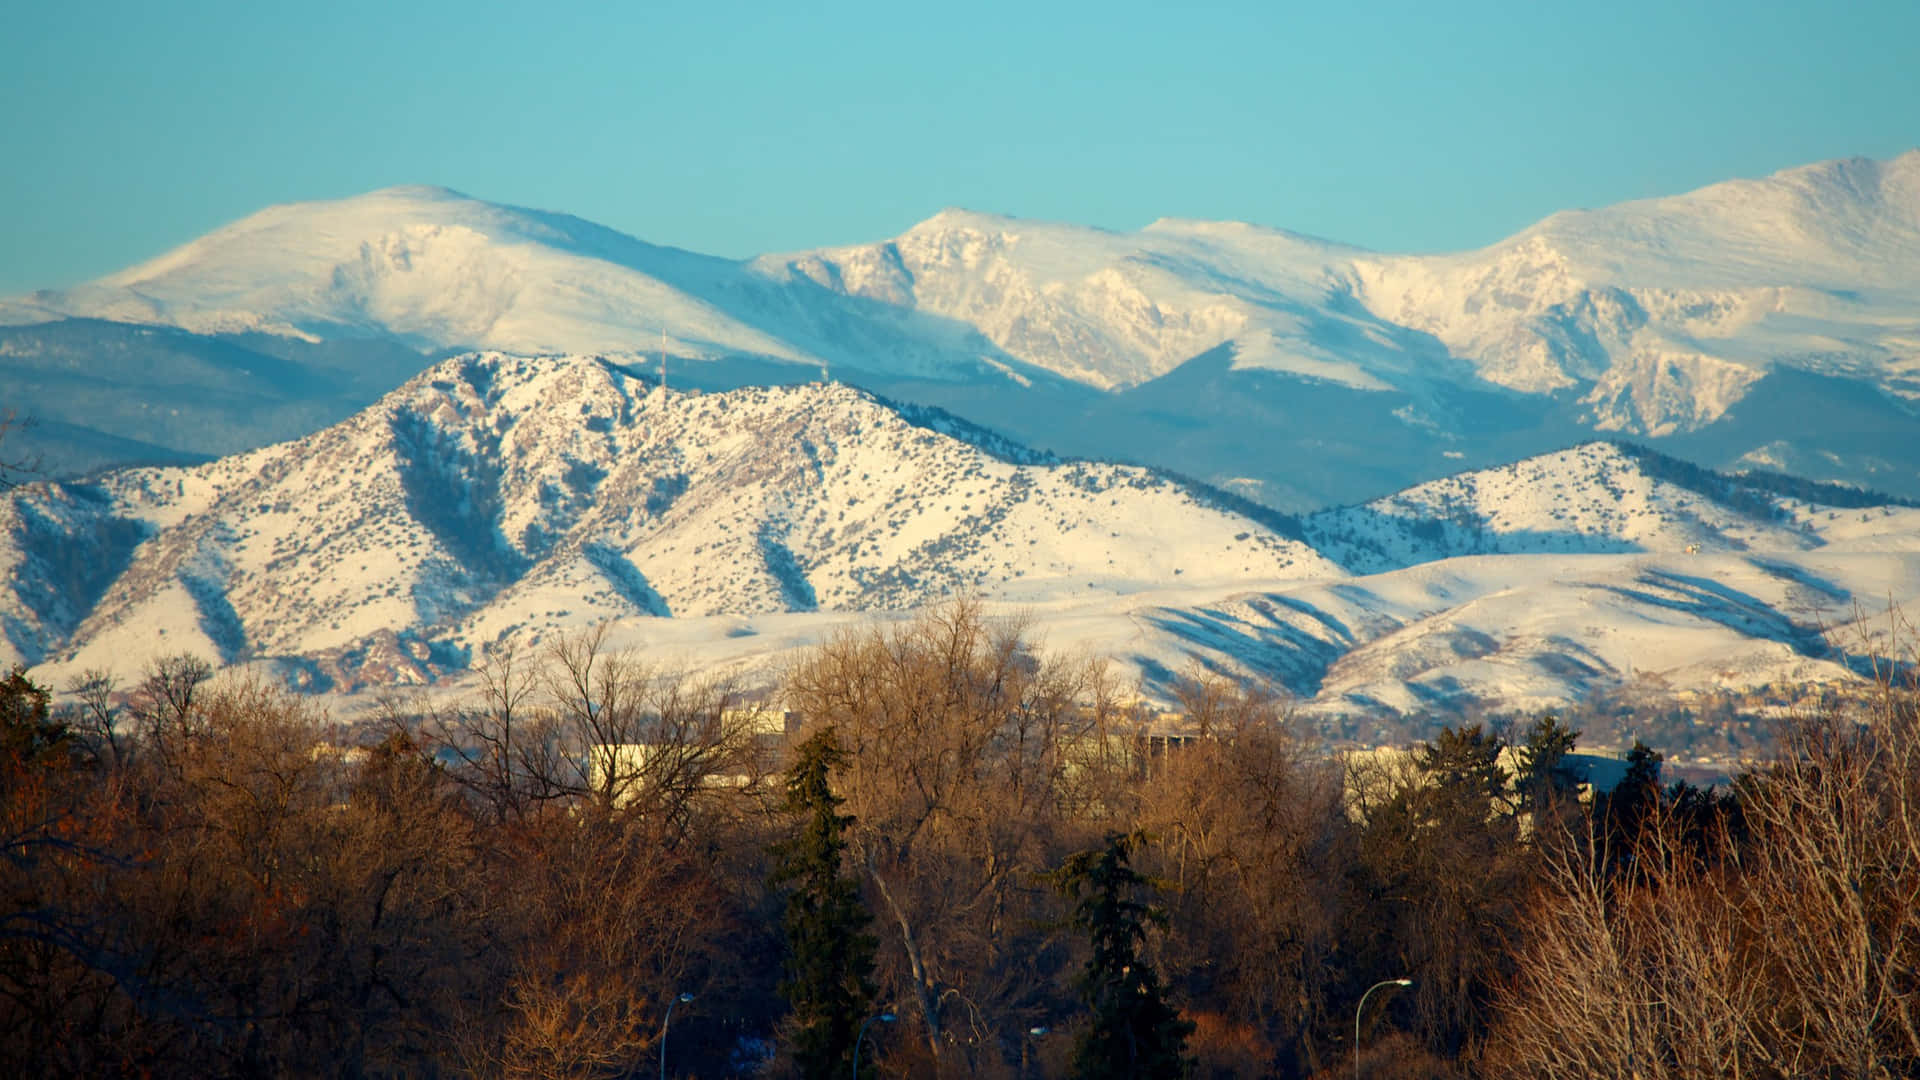 Impresionantespaisajes En Las Montañas De Colorado.